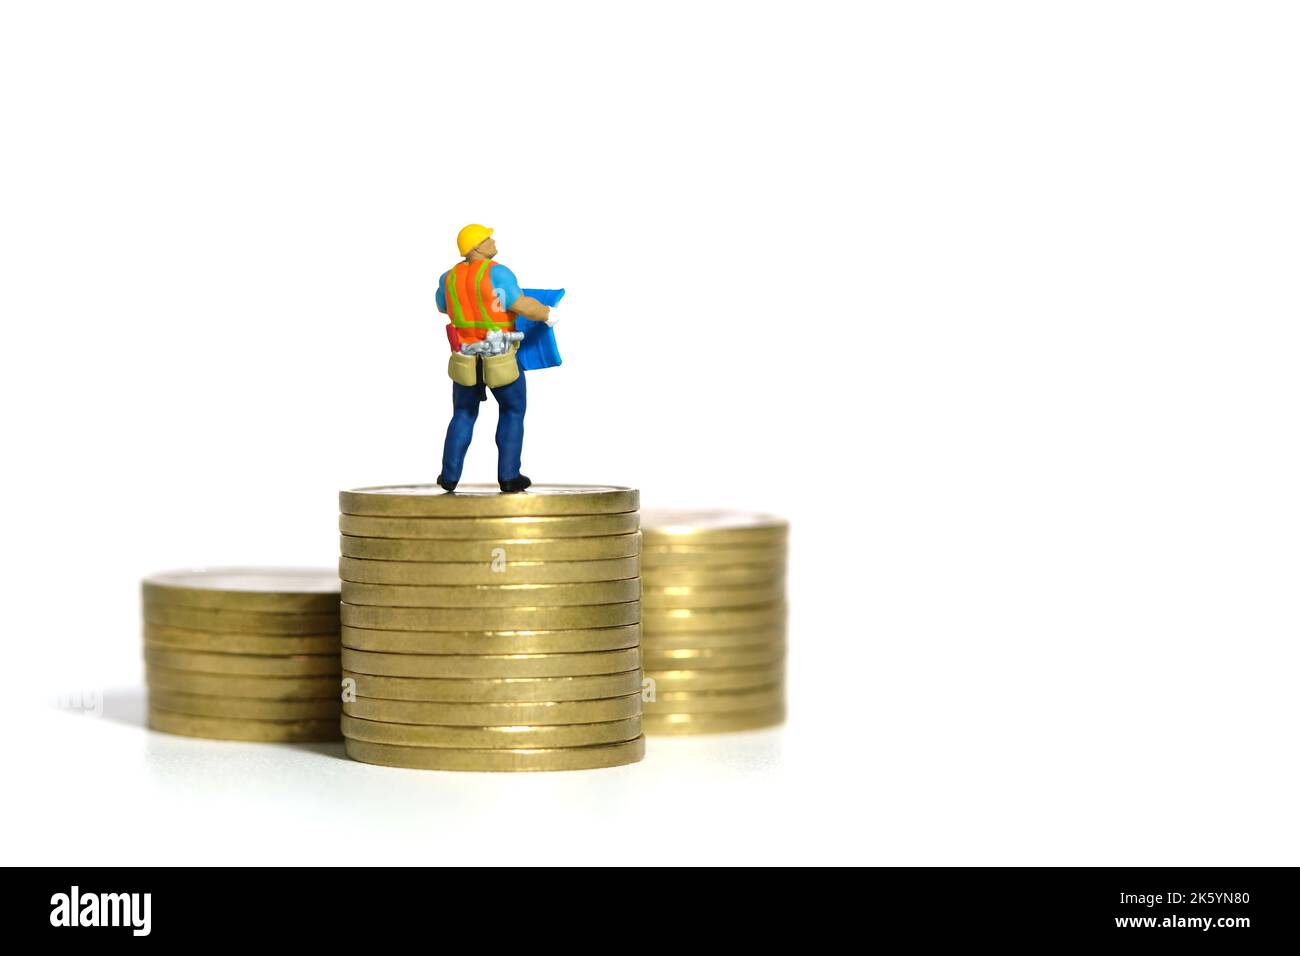 Miniatur Menschen Spielzeug Figur Fotografie. Projektbudgetkonzept. Ein Bauarbeiter mit einem Blaupause-Gebäude, das über dem Goldmünzenstapel steht. Stockfoto